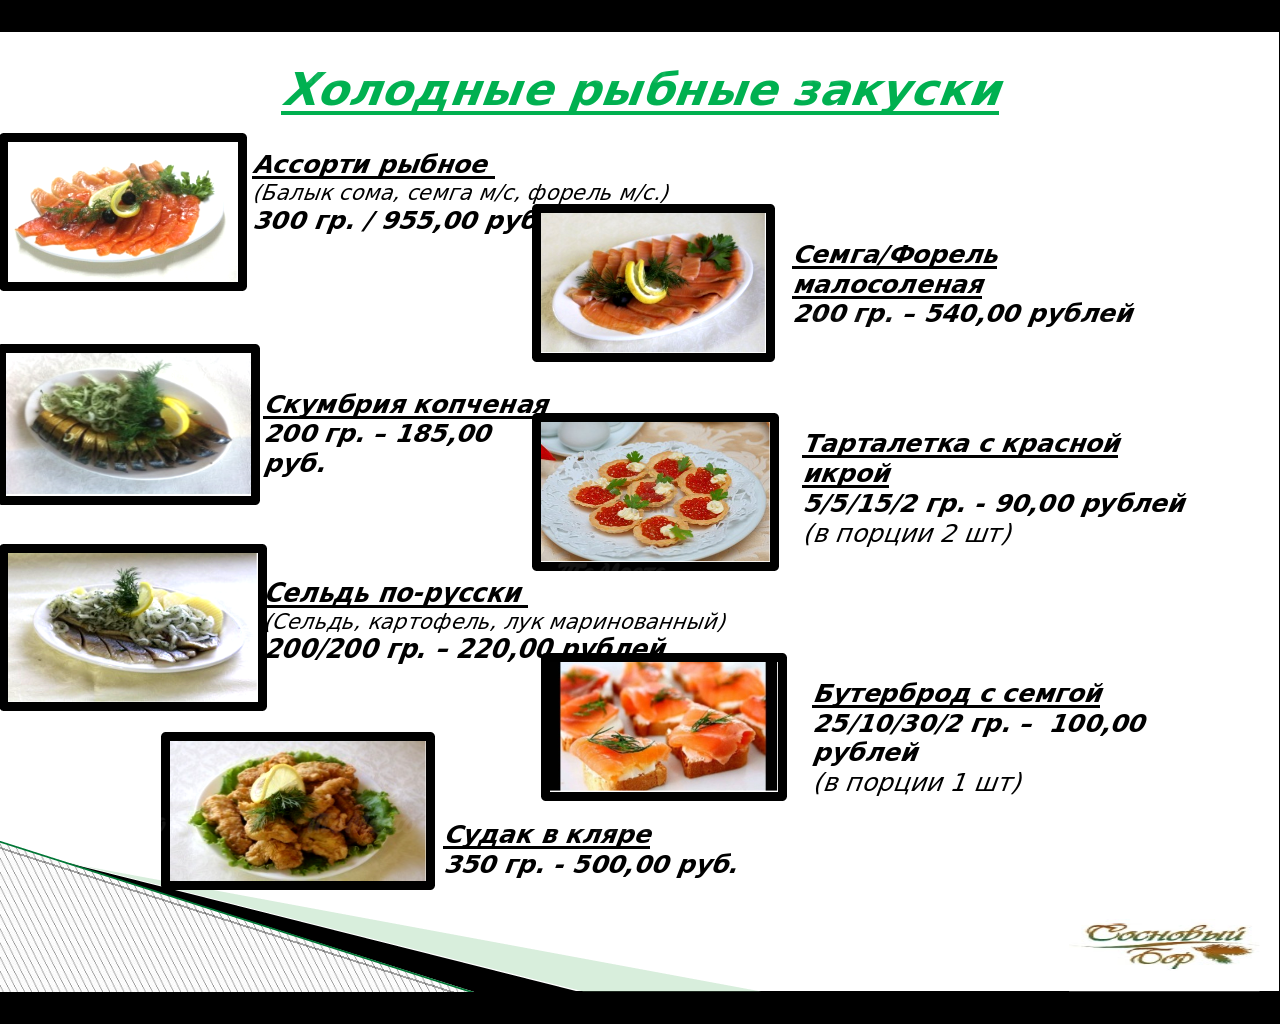 Сосновое меню ресторана. Сосновый Бор Тольятти меню. Ассортимент рыбных блюд и закусок. Ассортимент холодных закусок из рыбы. Рыбные блюда в ресторане меню.